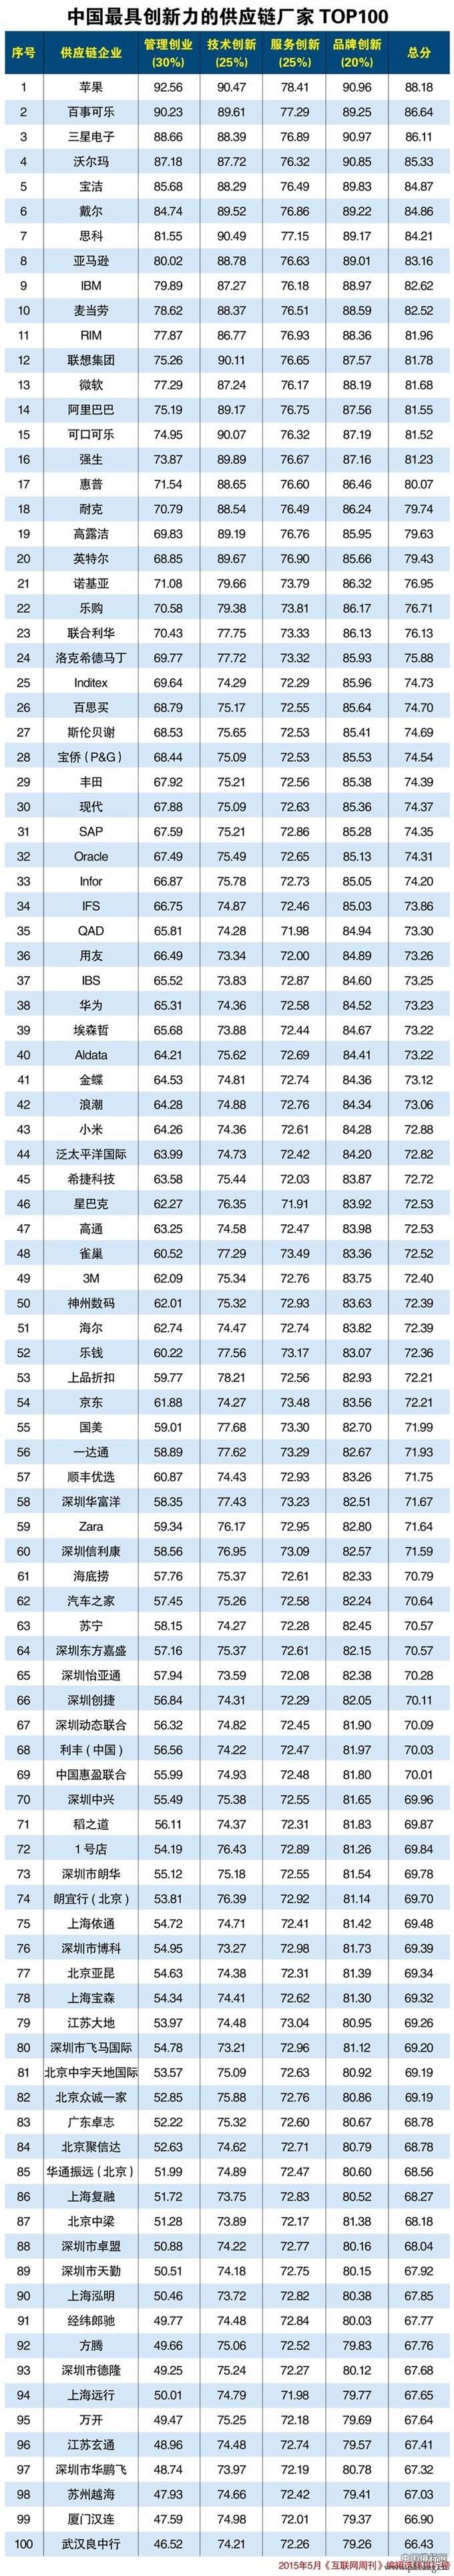 2015年中国最具创新力的供应链厂家排行榜TOP100